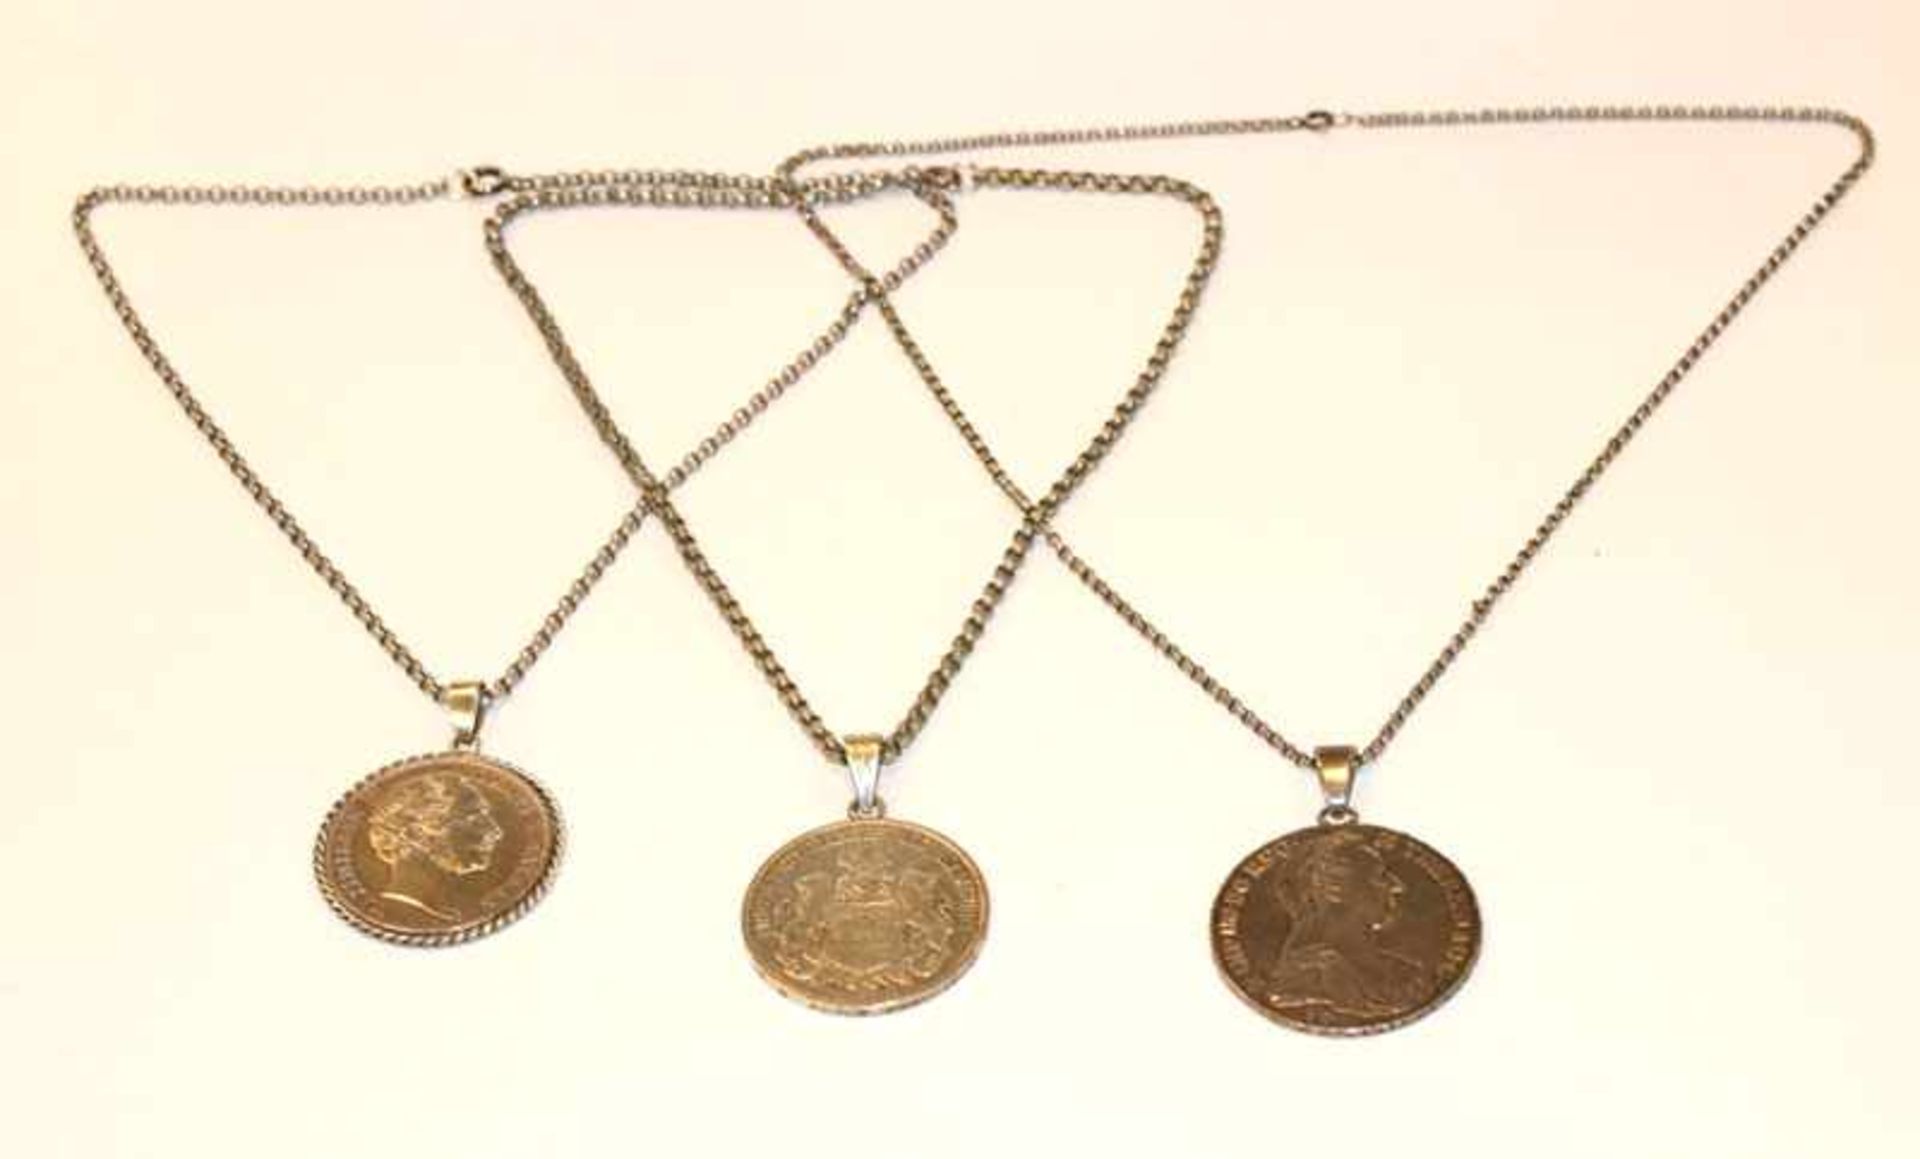 3 Silberketten, L 38, 42 und 54 cm, mit je einer gehenkelten Silbermünze, zus. 110 gr.